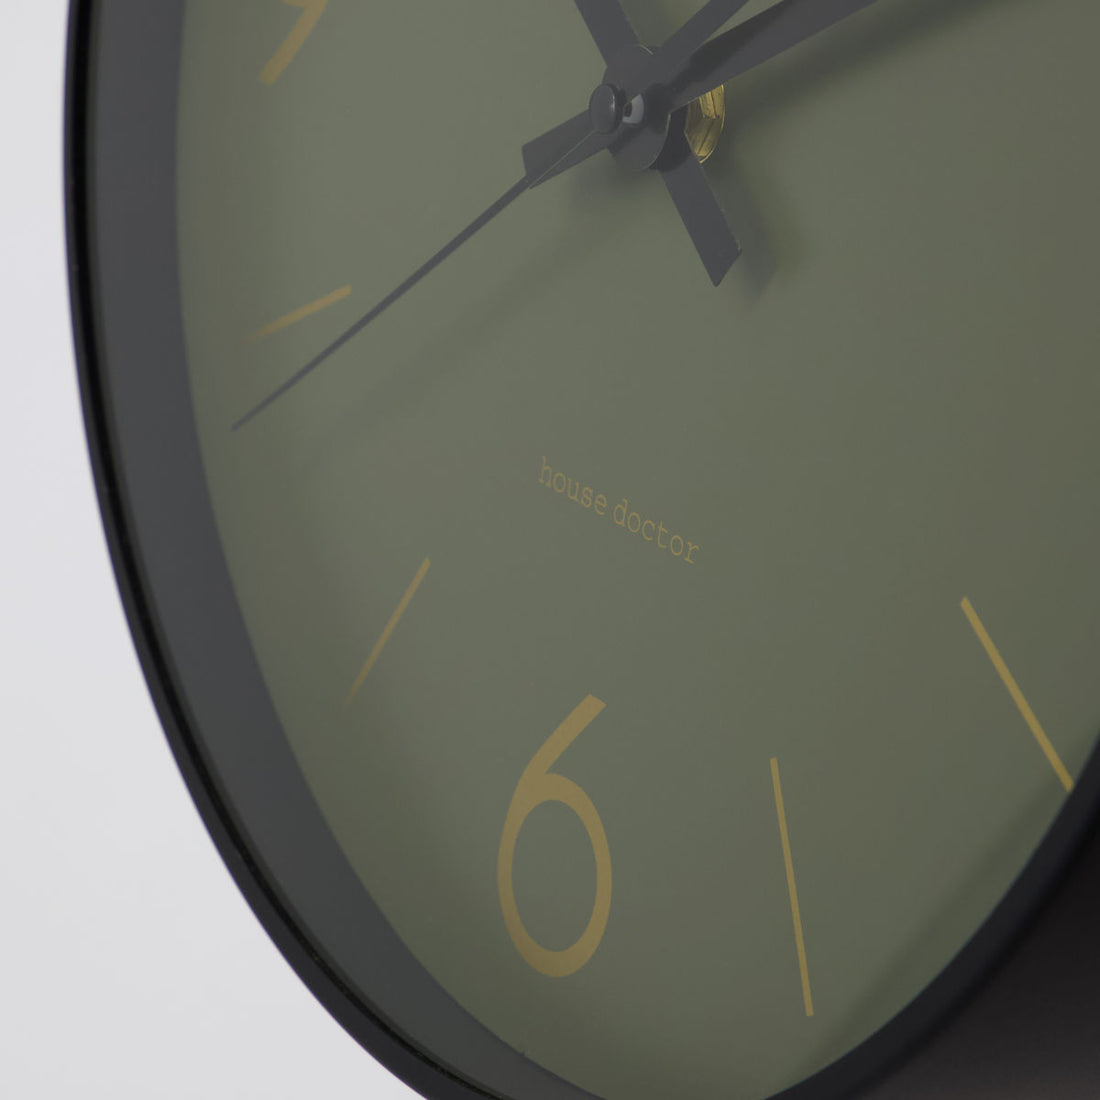 House Doctor Wall Clock, Hdtime, dunkelgrün